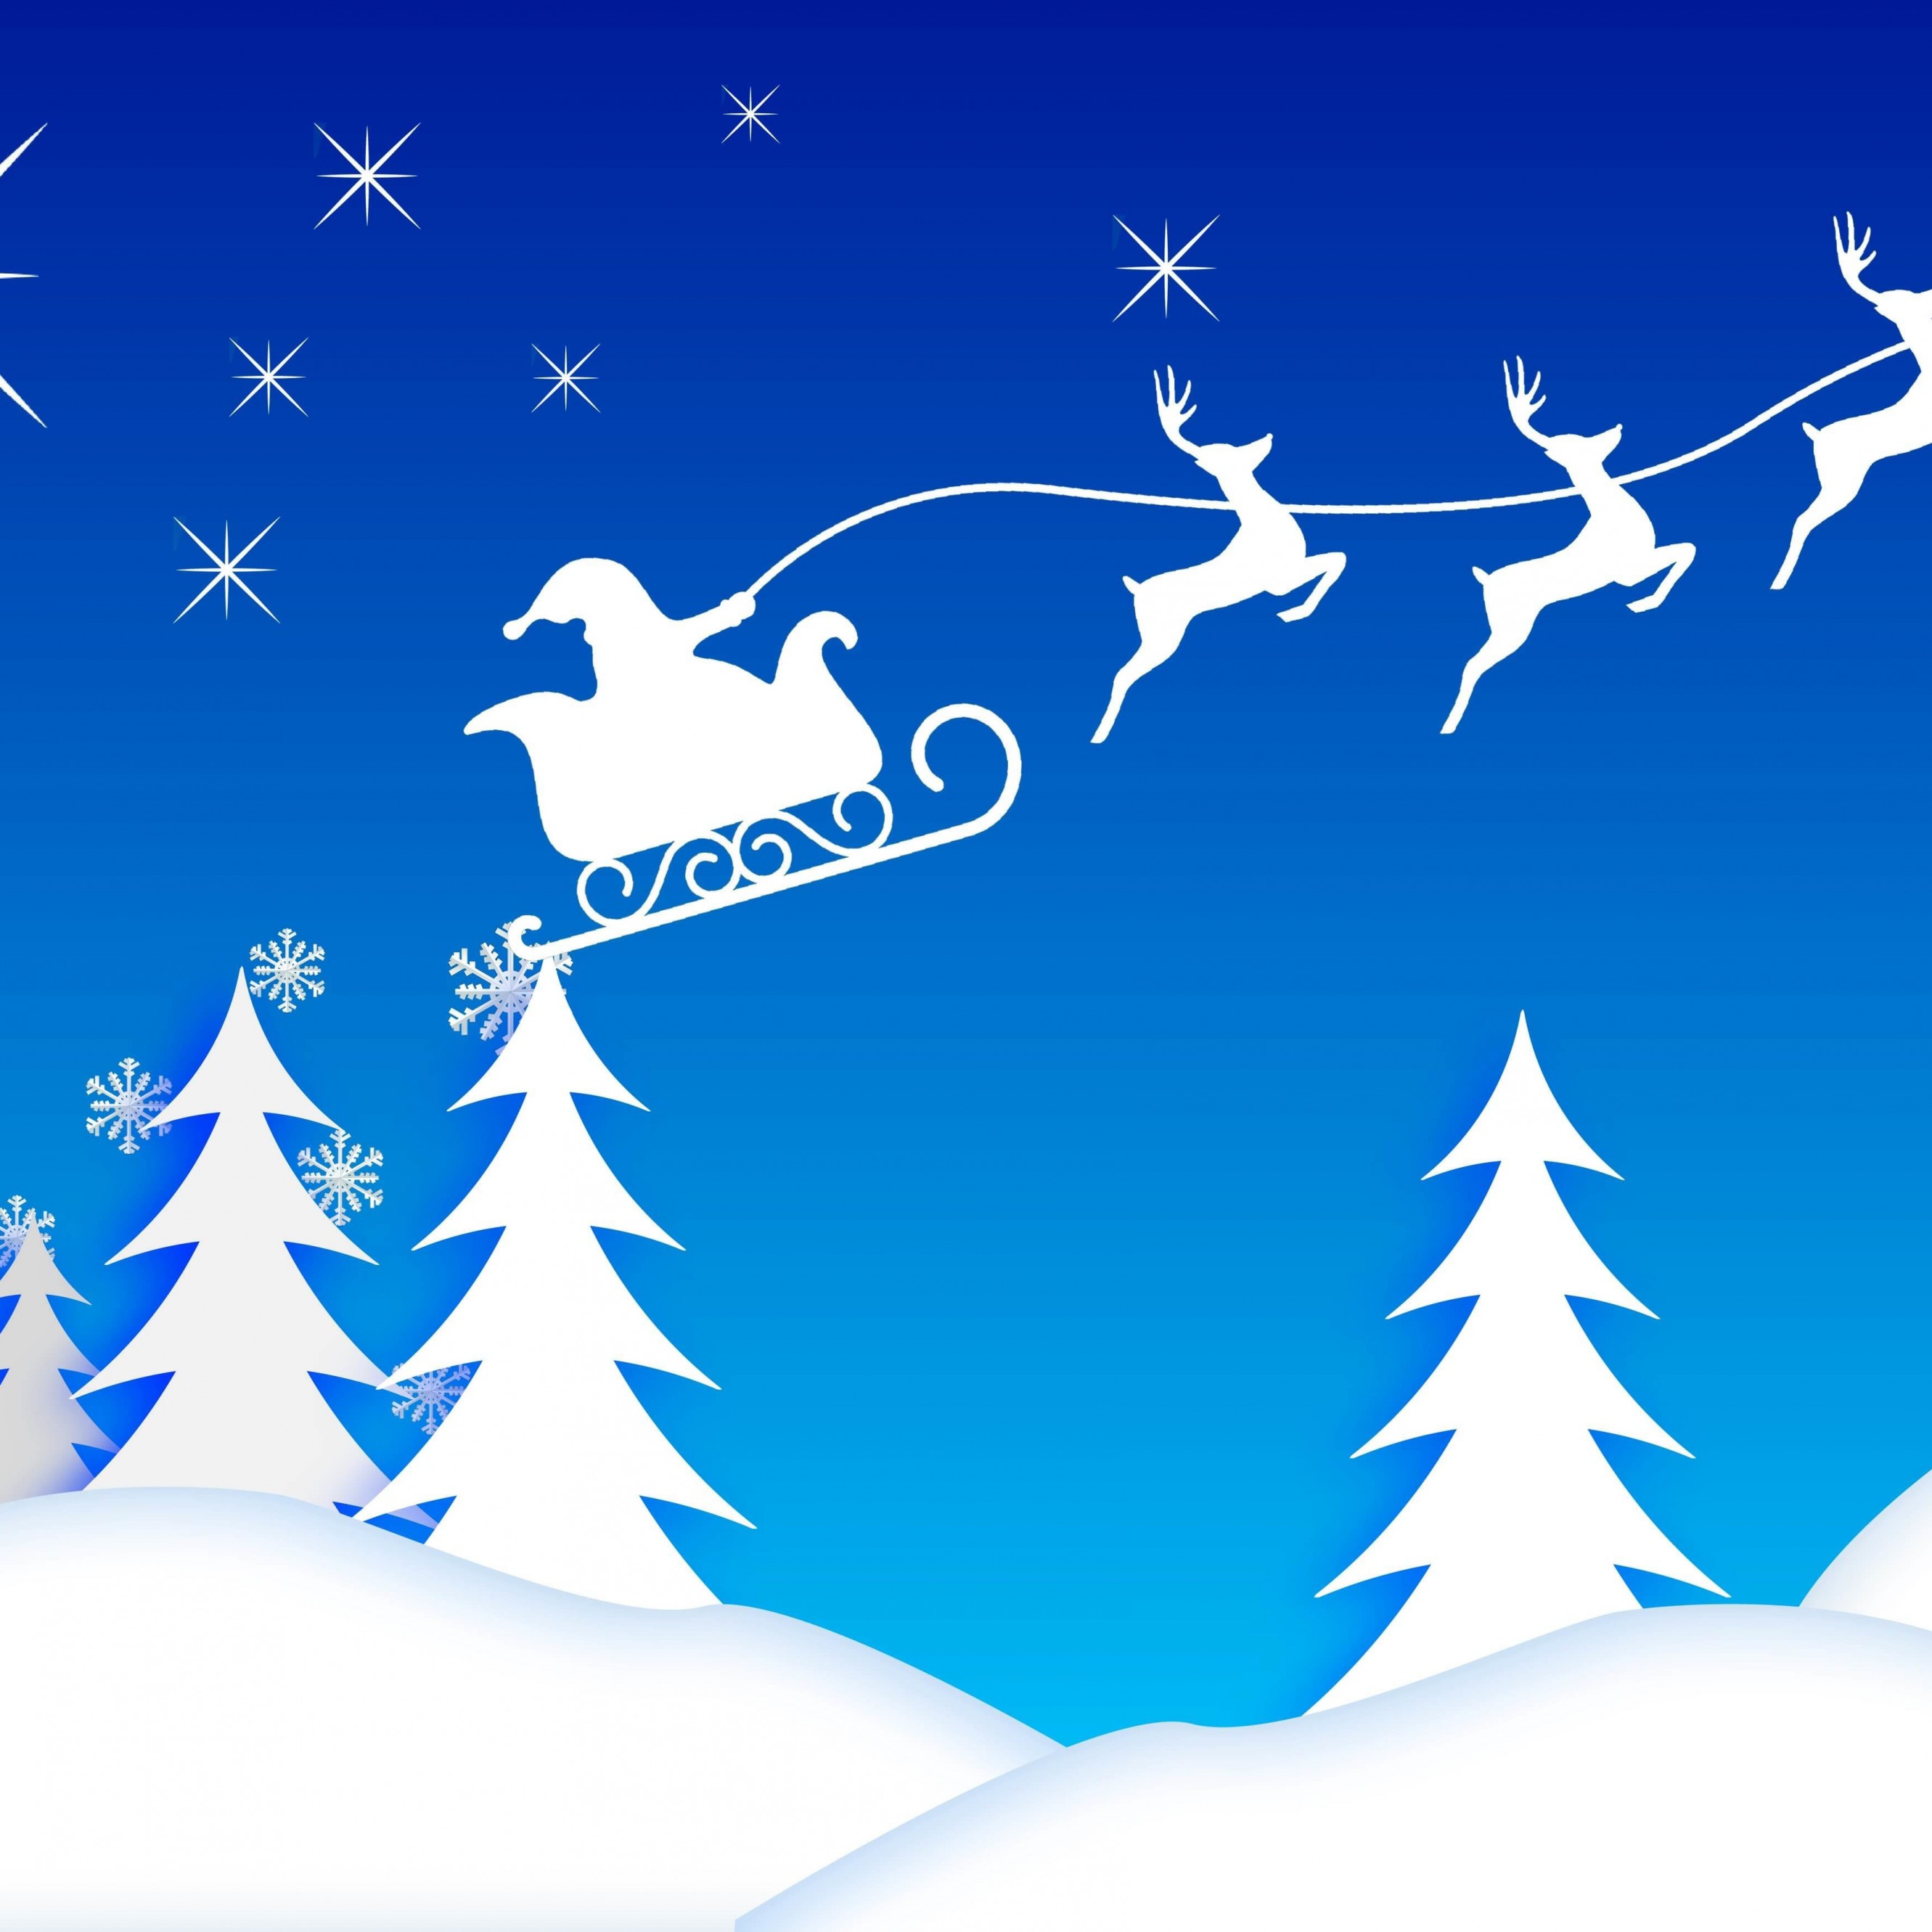 Santa’s Sleigh Illustration Wallpaper for Apple iPhone 6 Plus